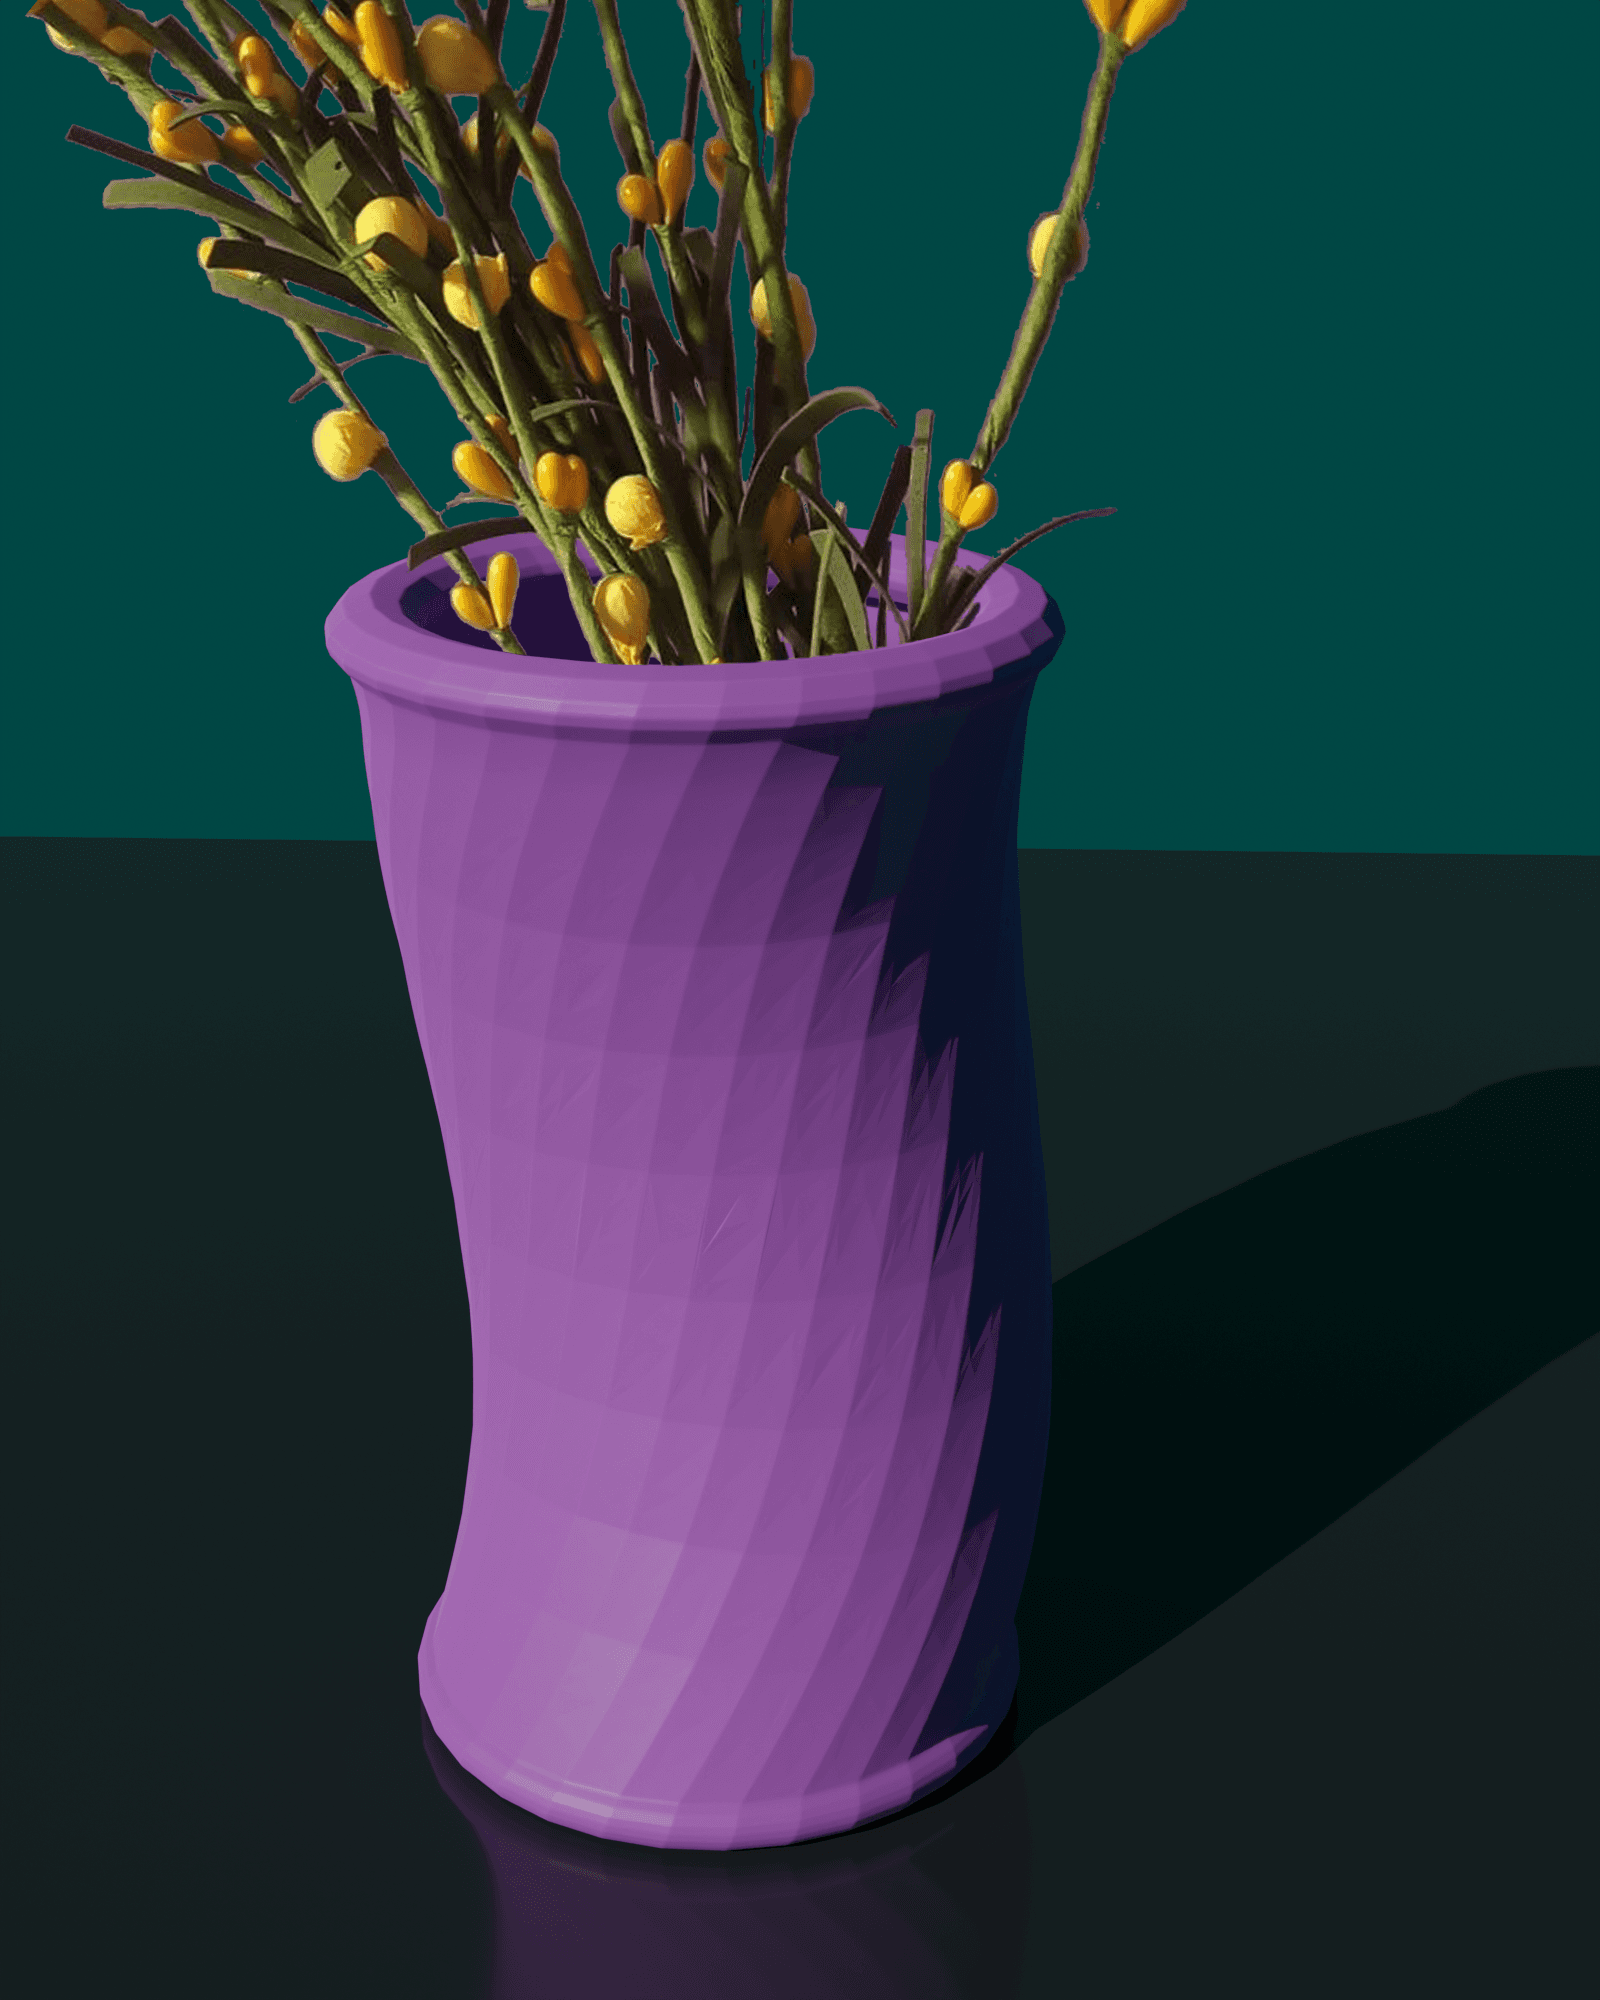 Bendy Vase / Pen holder - Support Free 3d model